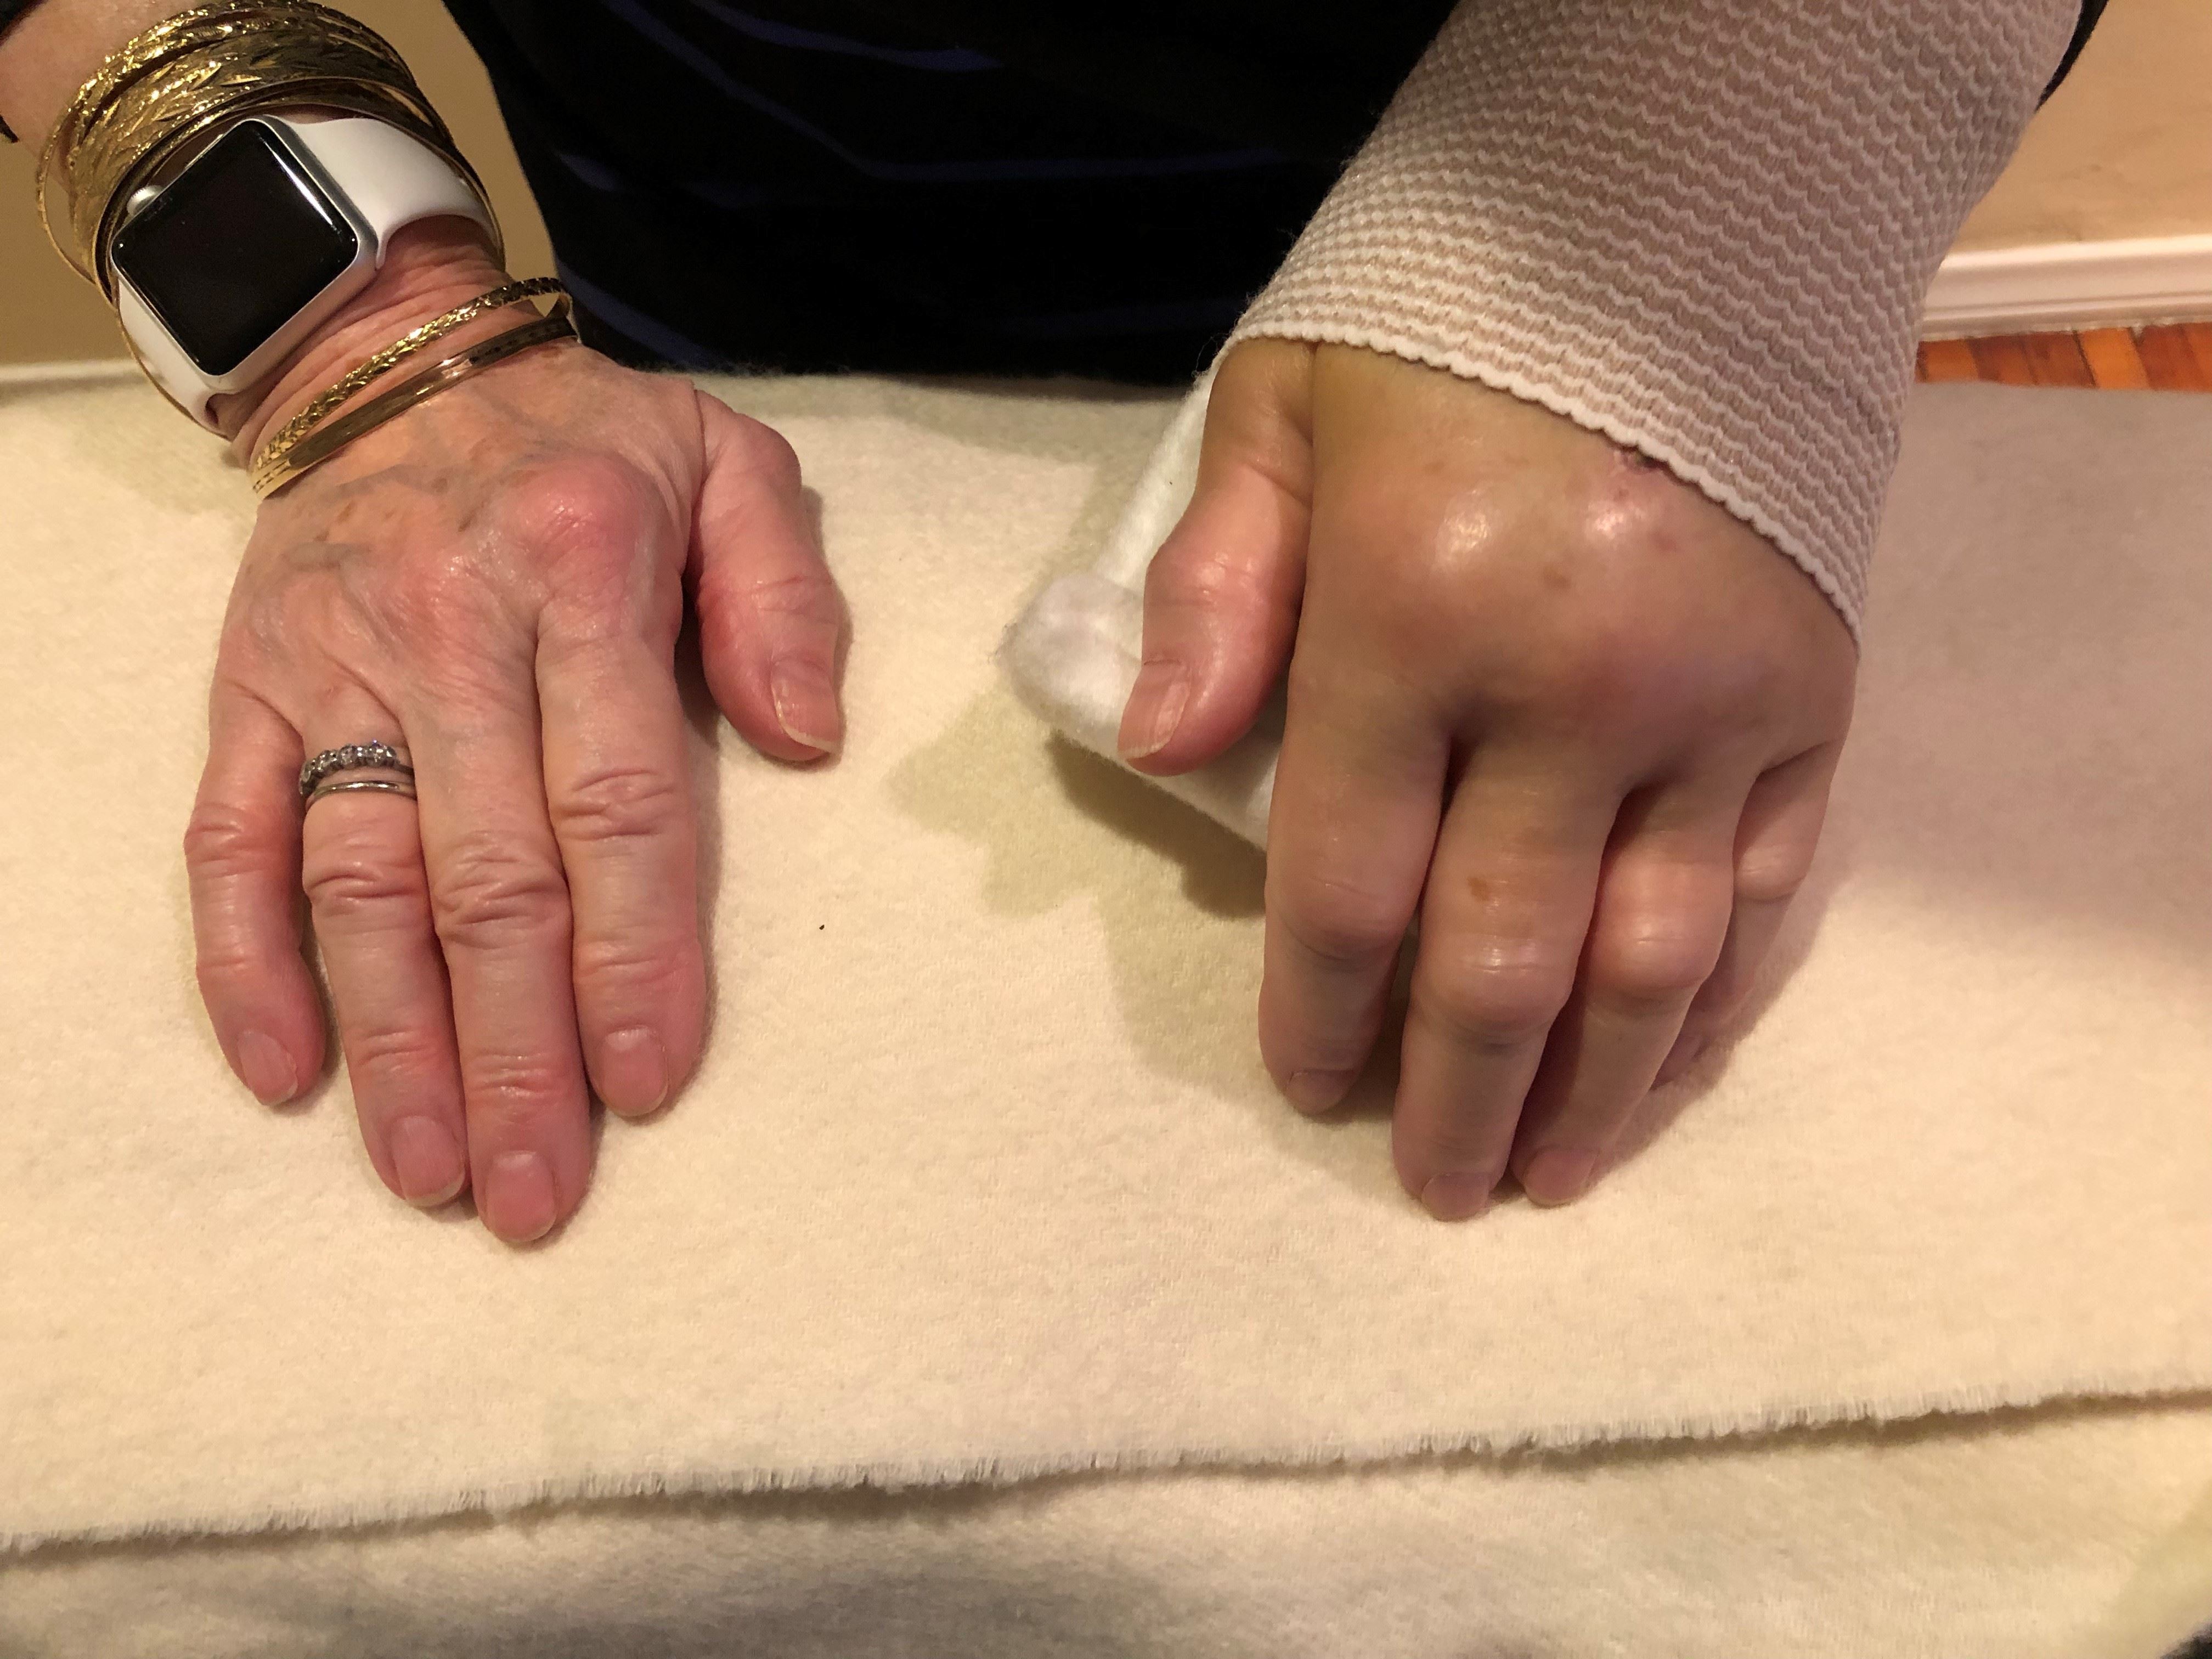 woman's swollen left hand due to a broken wrist